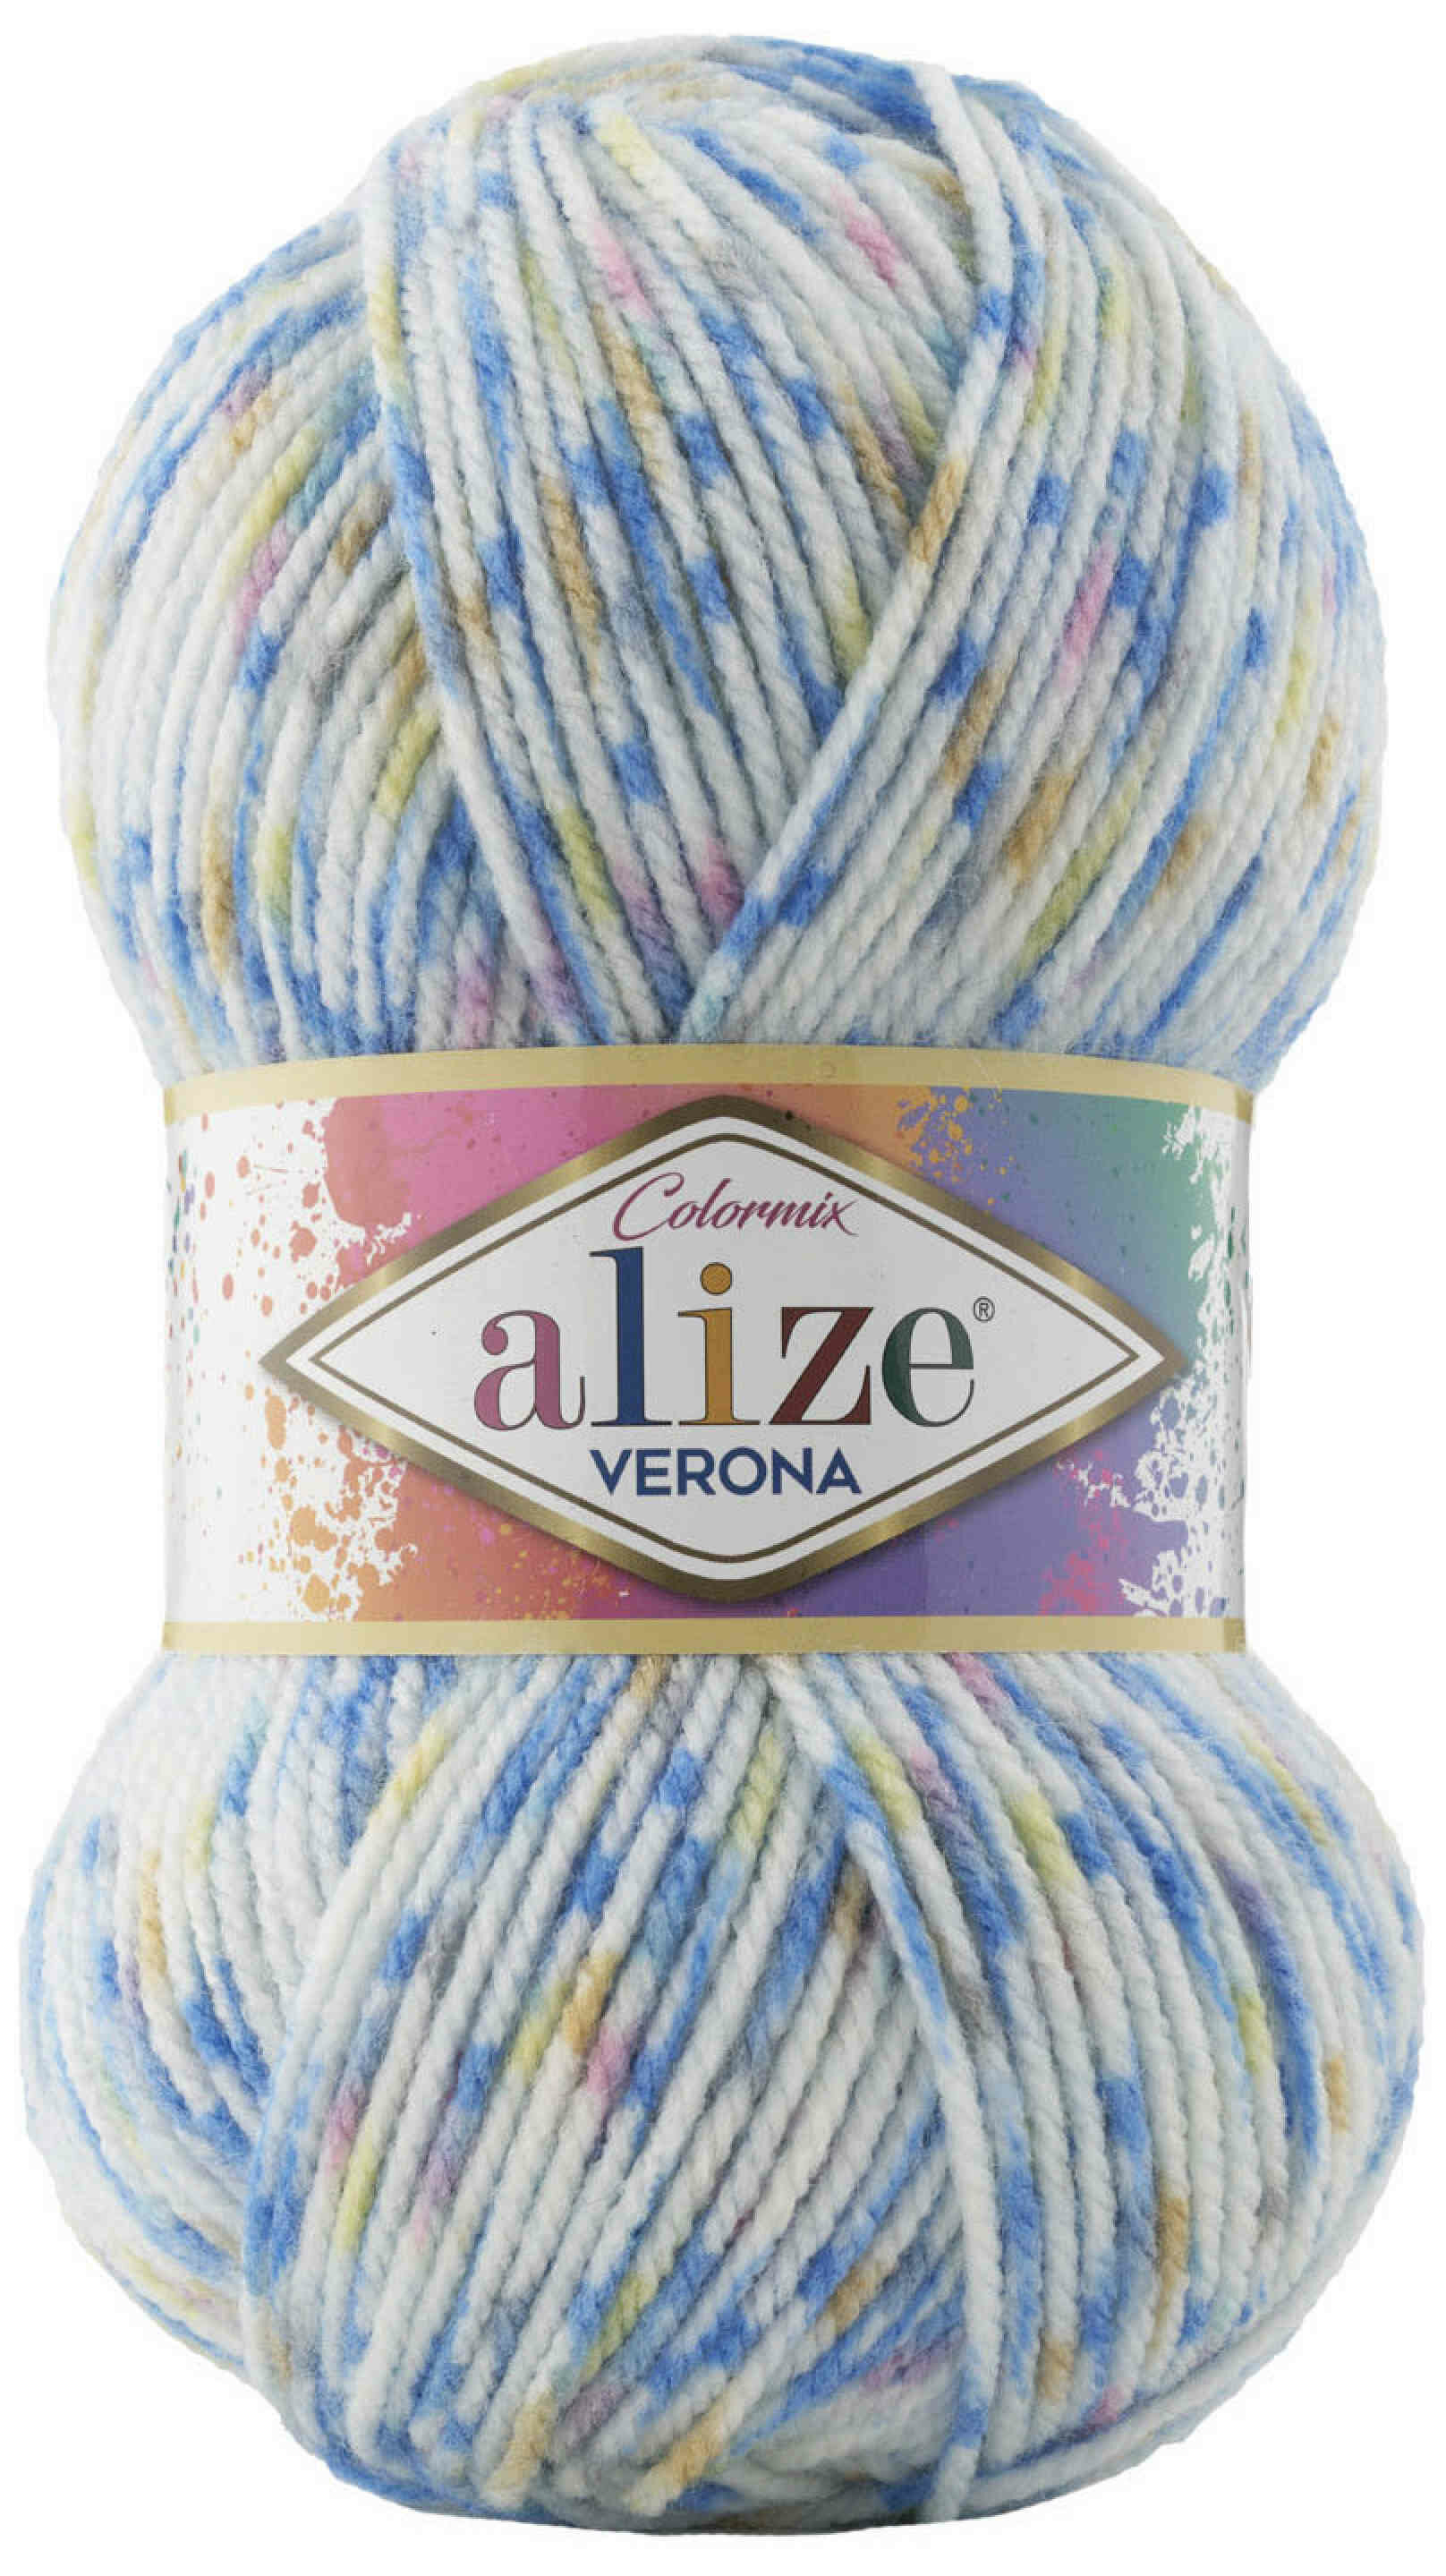 Пряжа Alize Verona бело-голубой (7702), 100%акрил, 210м, 100г, 1шт